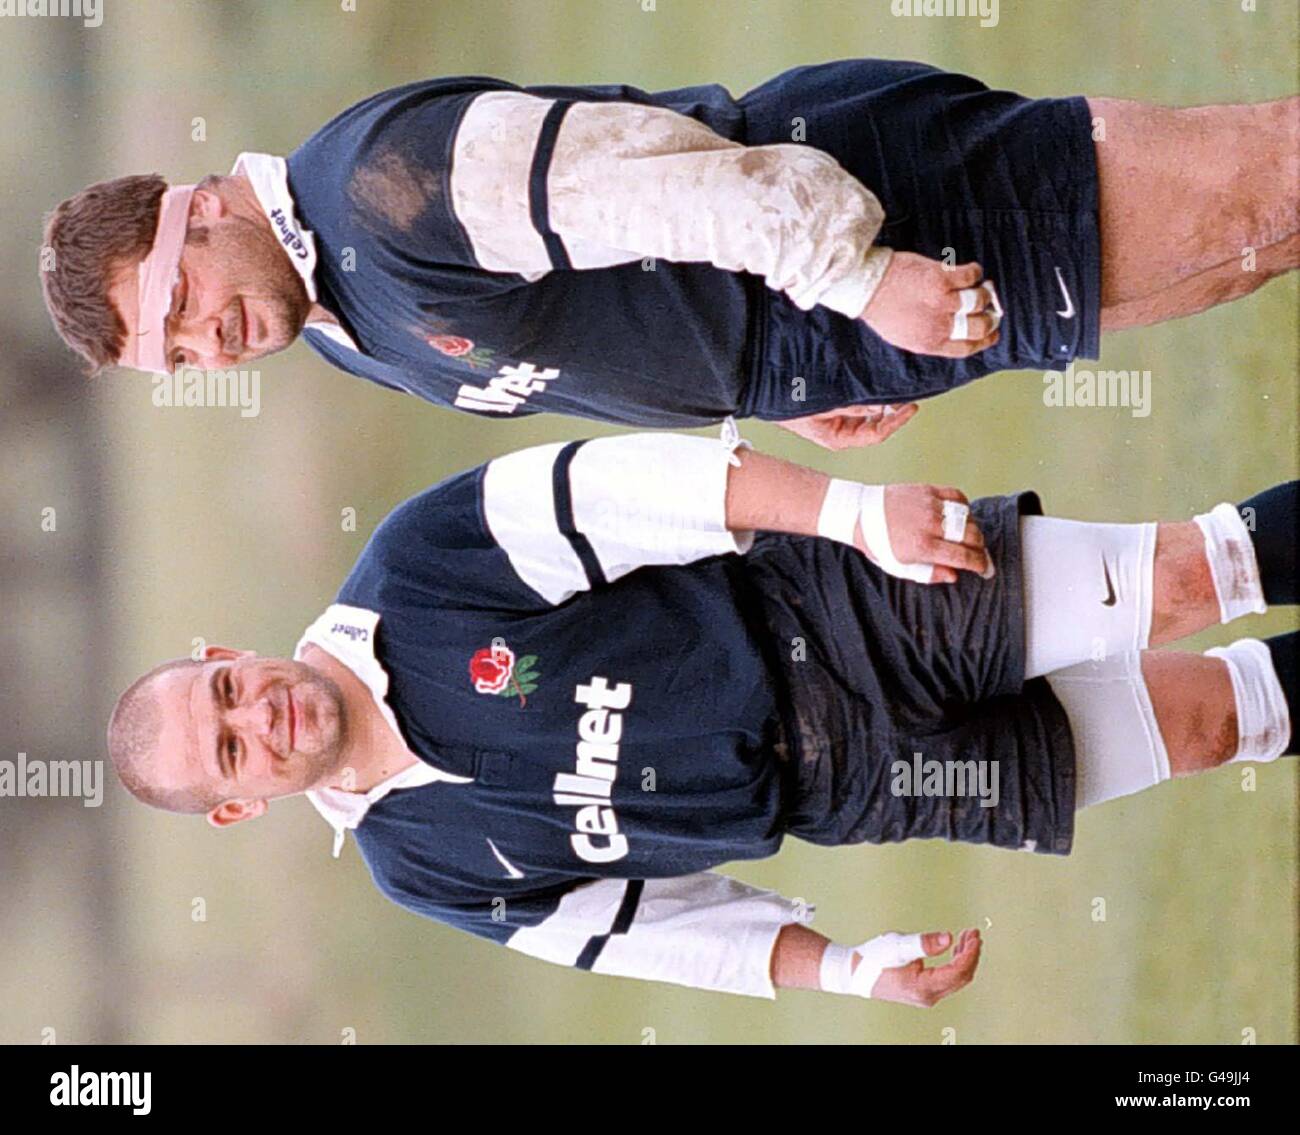 England Rugby Union Stars Richard Cockerill (links) und Darren Garforth (rechts) während einer Trainingseinheit in der Mottram Hall, Cheshire heute (Mittwoch). Foto von Dave Kendall. Stockfoto